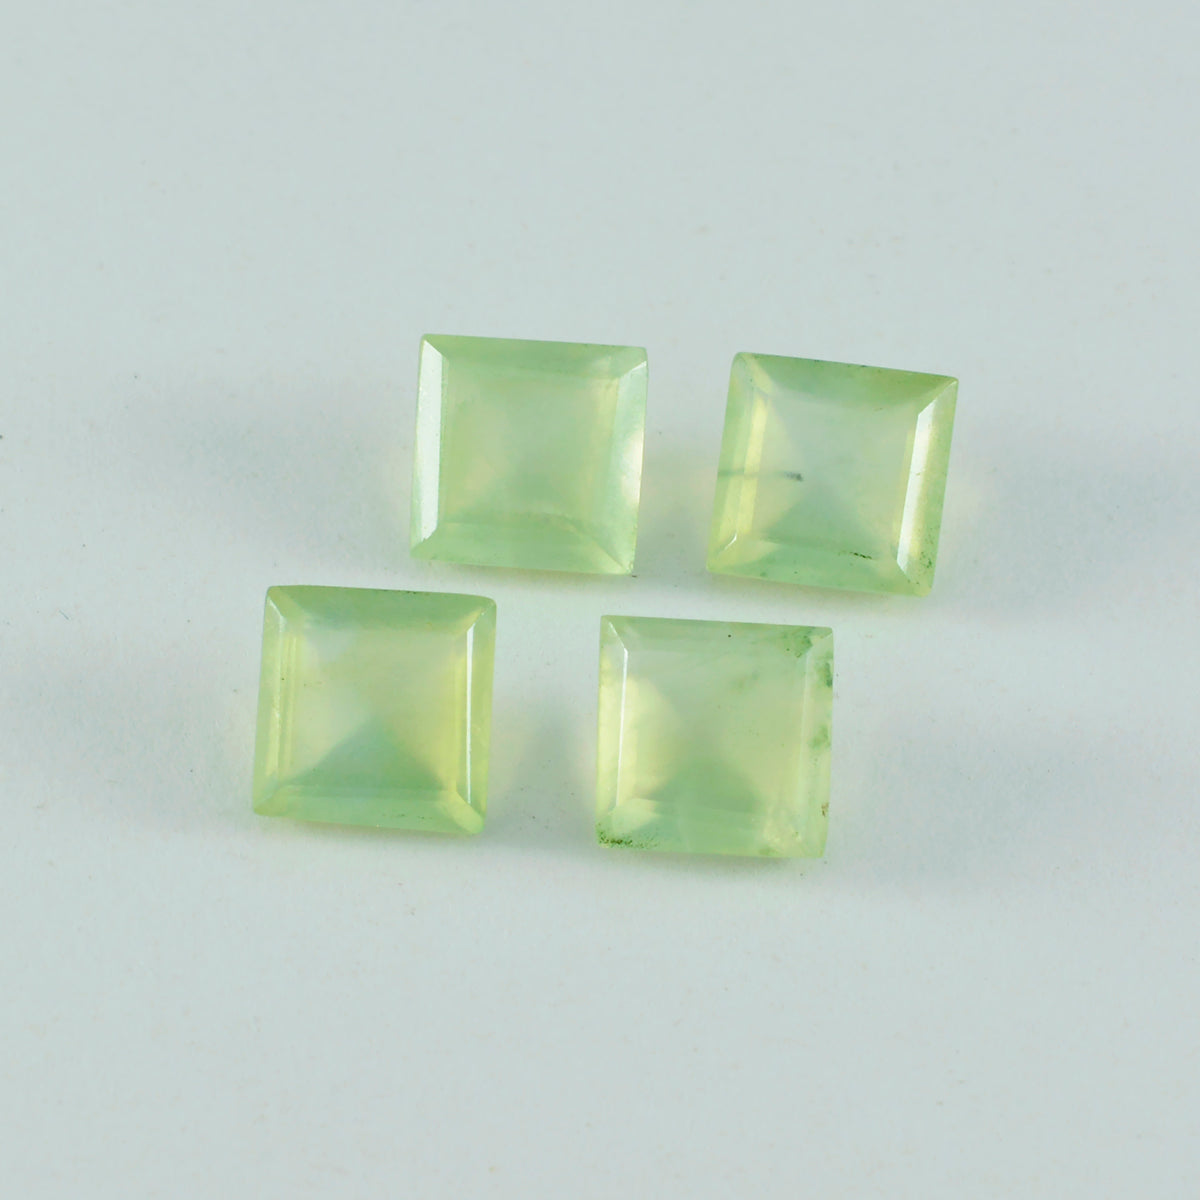 Riyogems 1PC groene prehniet gefacetteerde 10x10 mm vierkante vorm mooie kwaliteit losse steen